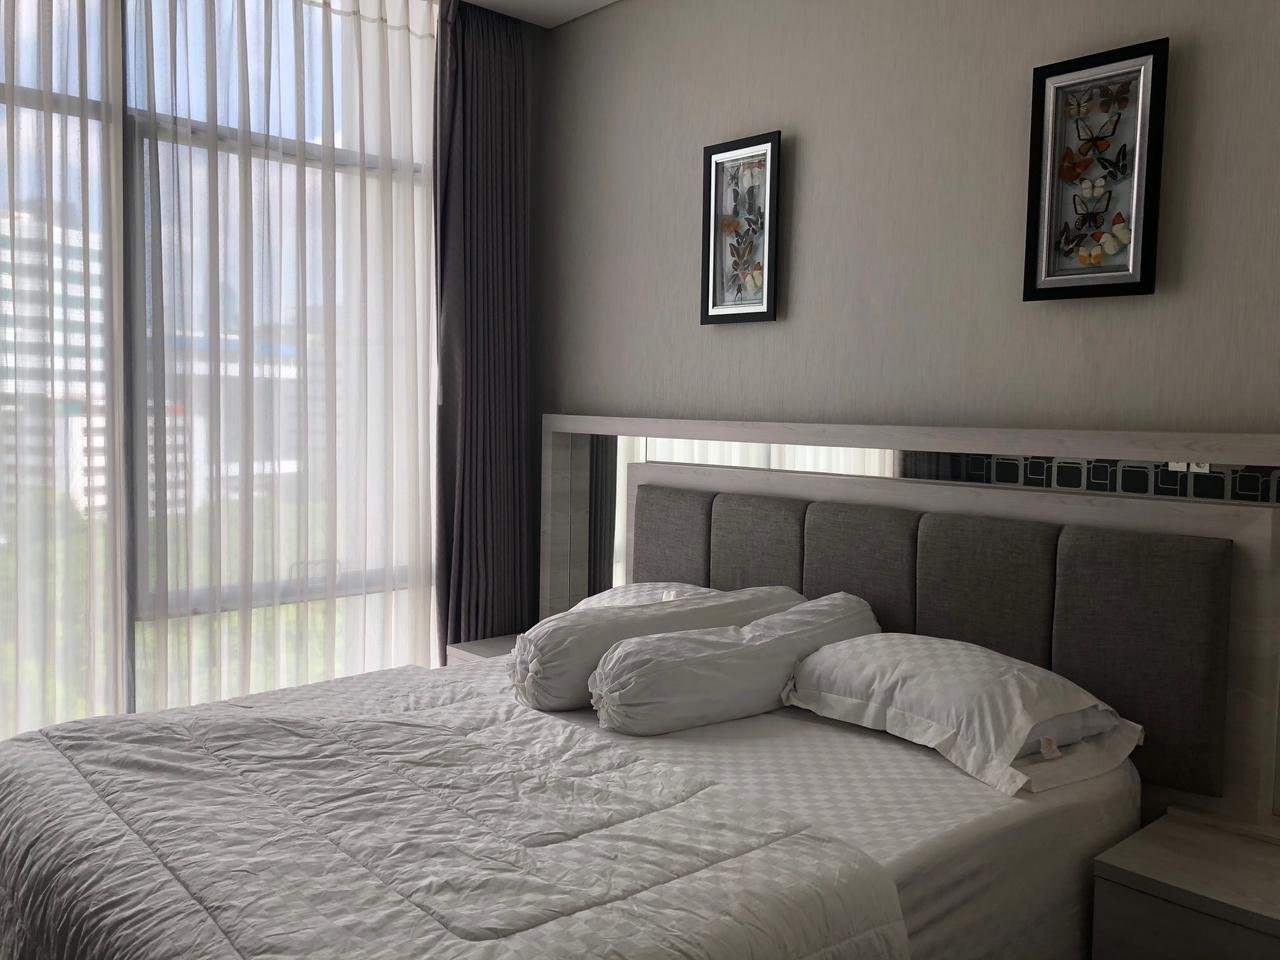 Apartemen Verde 3 Bedroom Full Furnished, Harga Terbaik